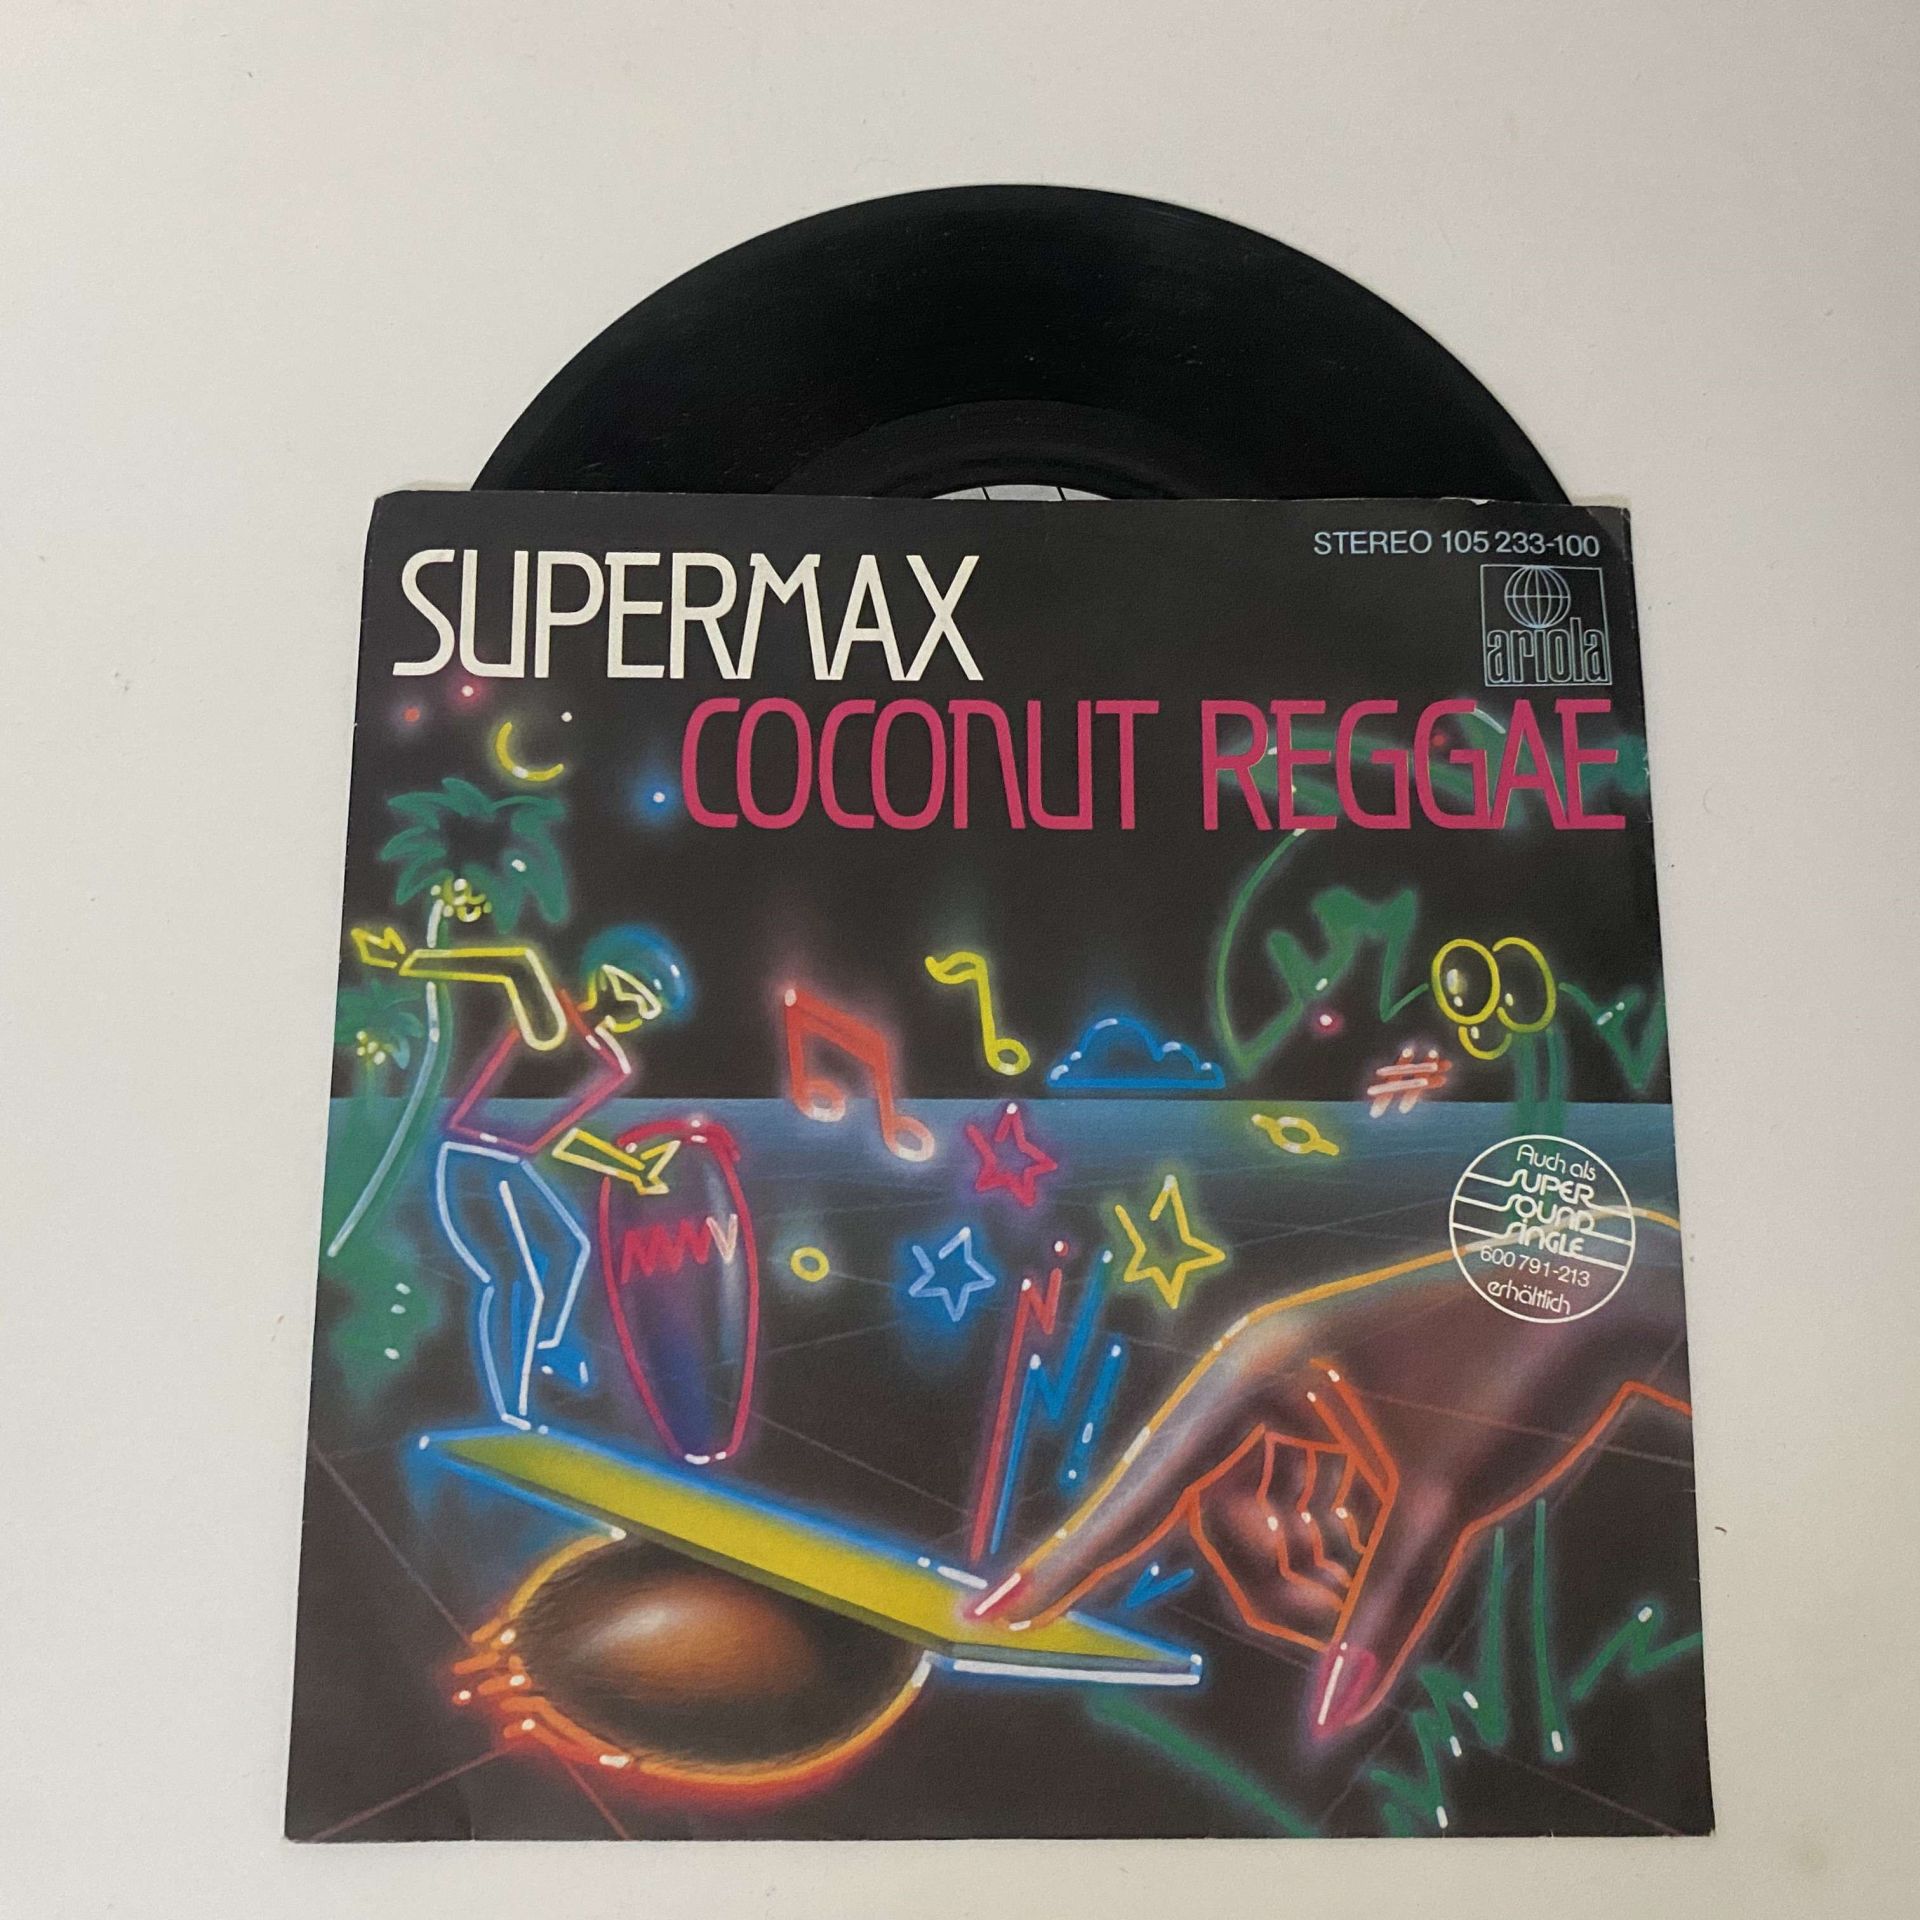 Supermax – Coconut Reggae